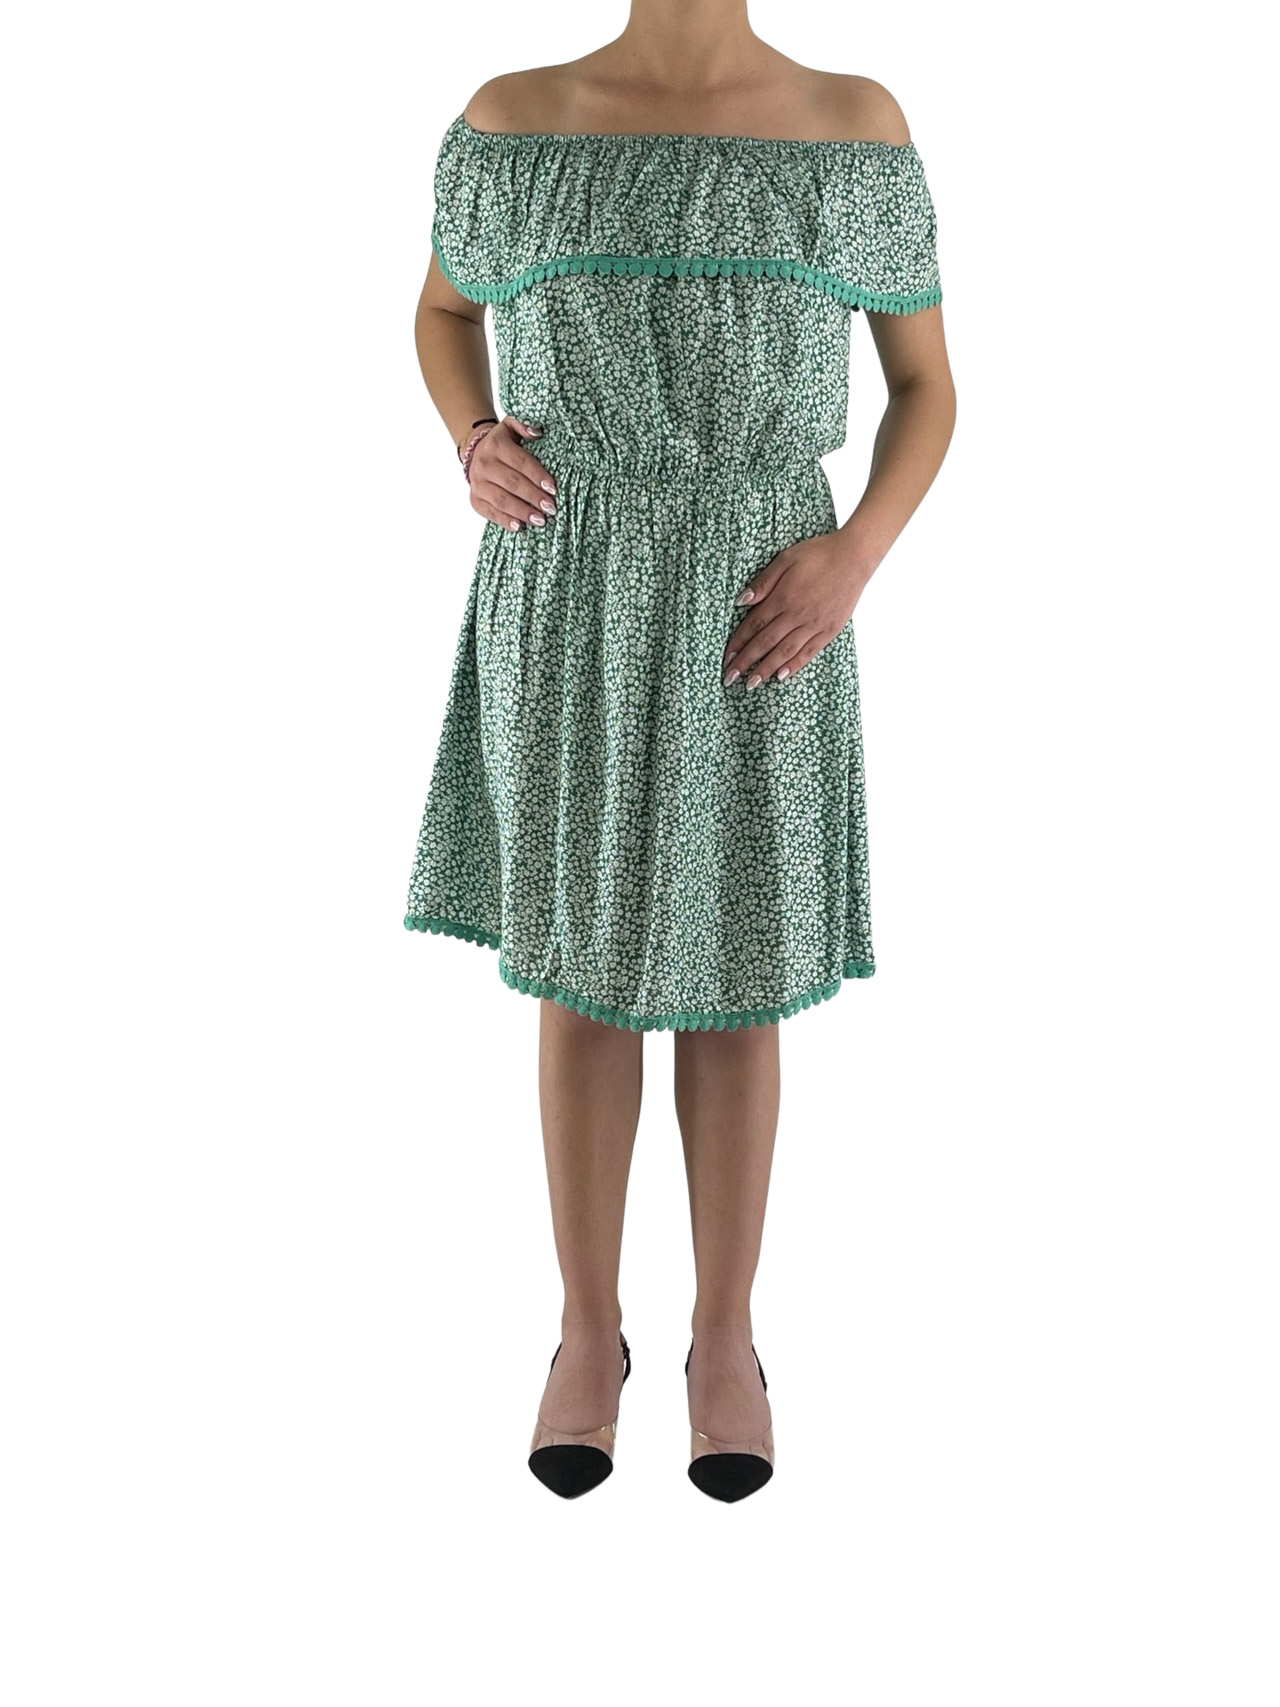 Φόρεμα εμπριμέ κοντό με βολάν κωδ. 6536 μπροστινή όψη-πράσινο